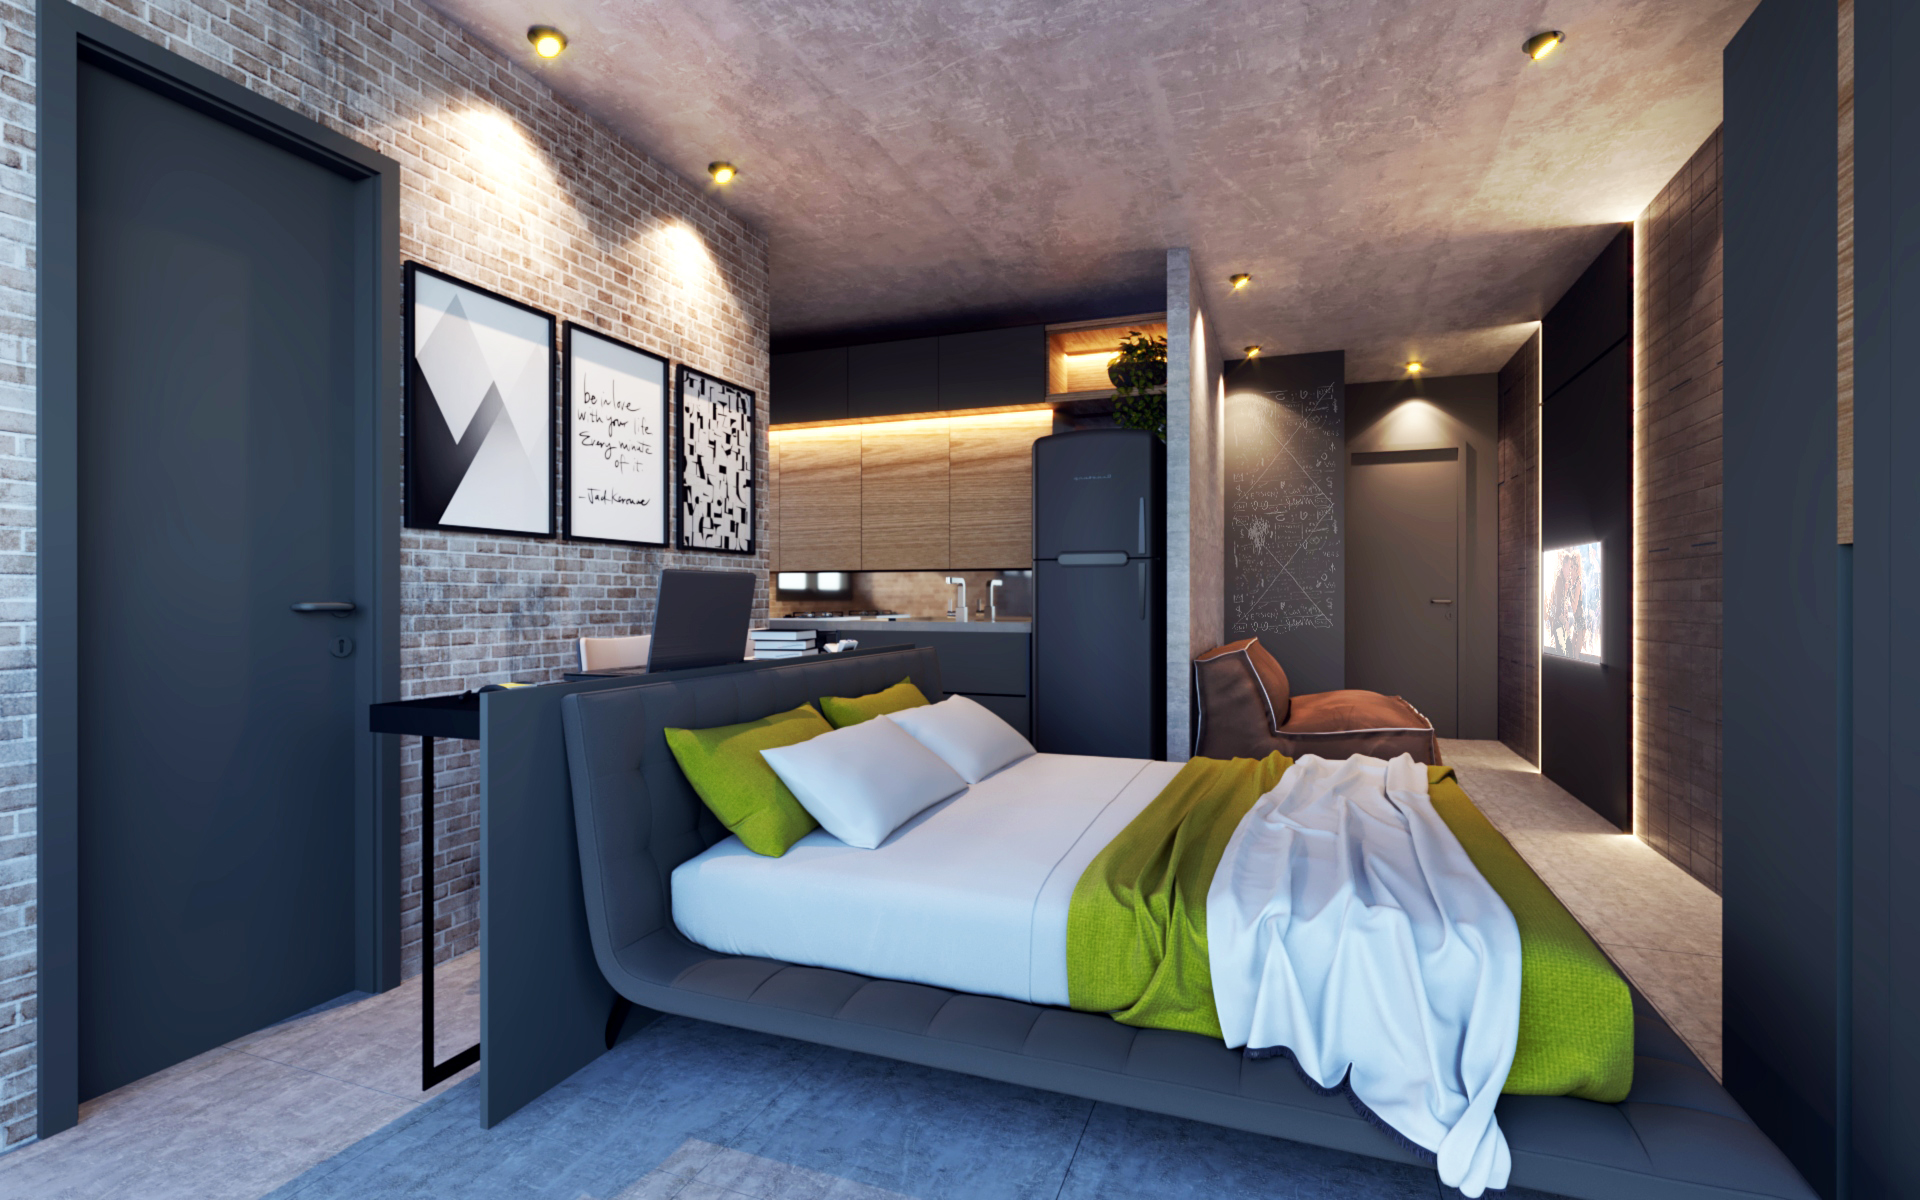 Unidades de um dormitório que oferecem ambientes integrados e serviços no condomínio são valorizadas por jovens,  além de atraírem investidores de olho no aluguel